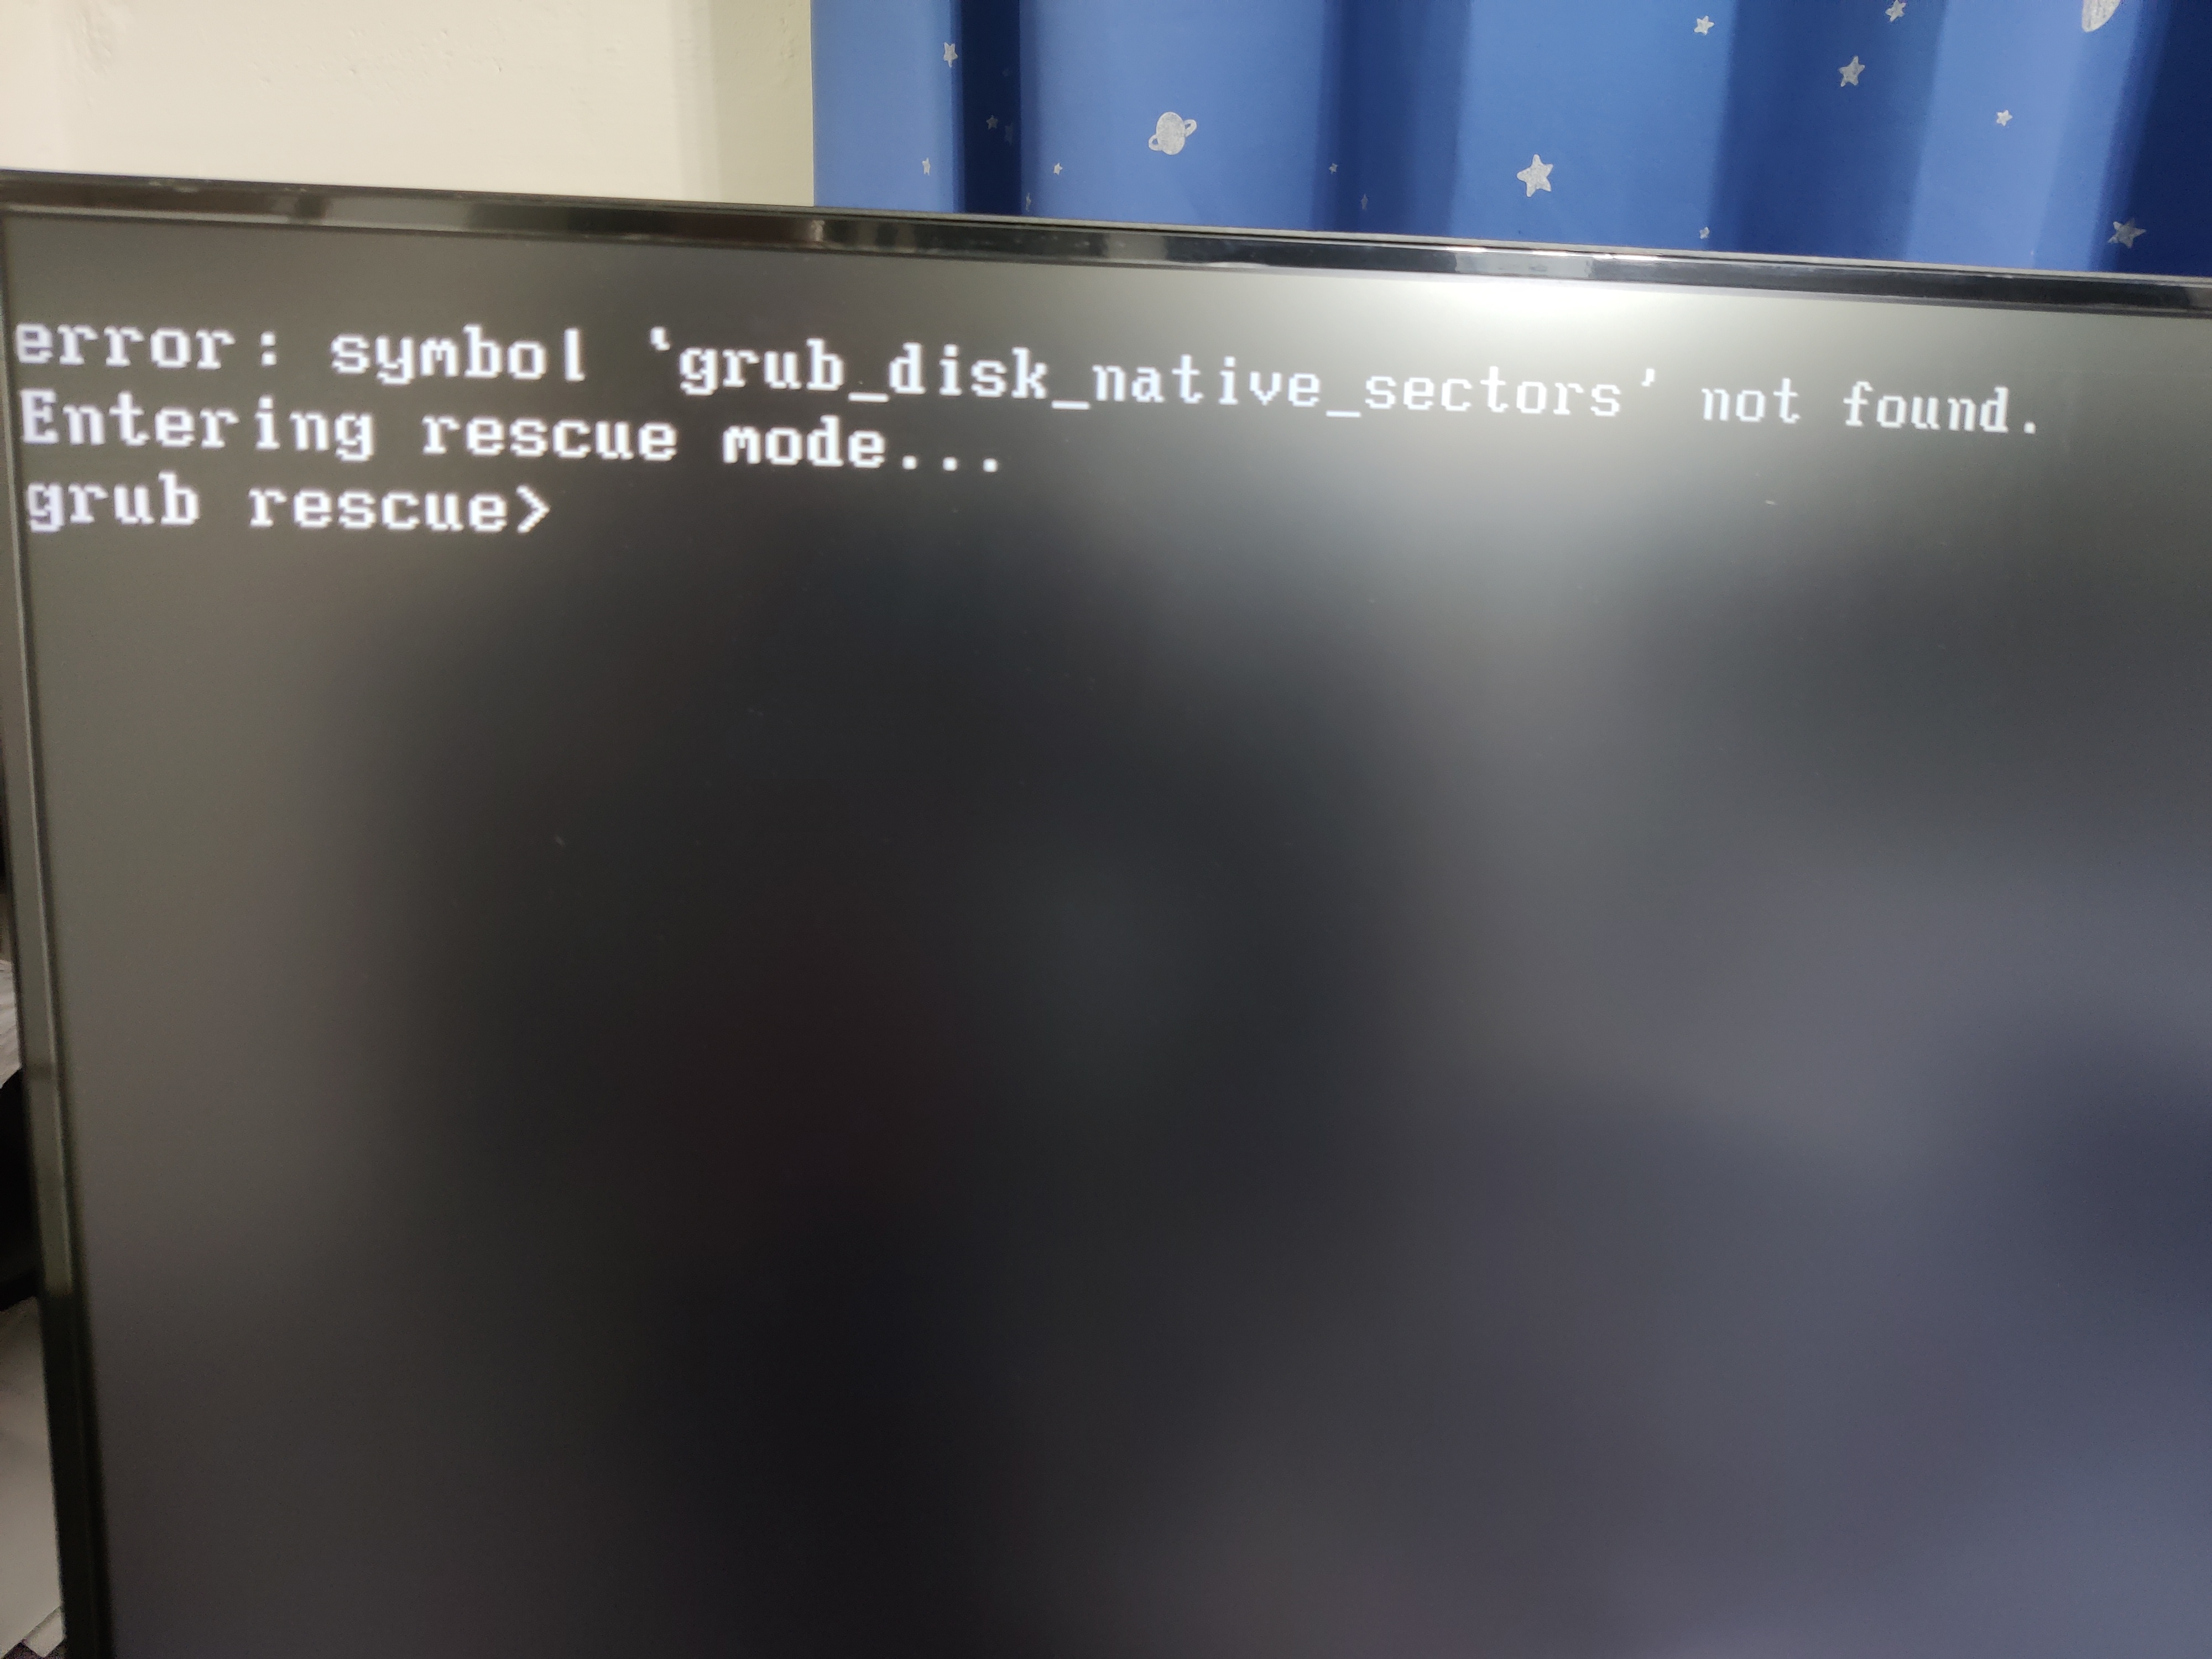 Grub is lockdown not found. Тачскрин меню в Grub. Grub Error symbol Grub_Disk_native_sectors not found. Boot sector not found. Grub2 Run Windows 10 VHD.